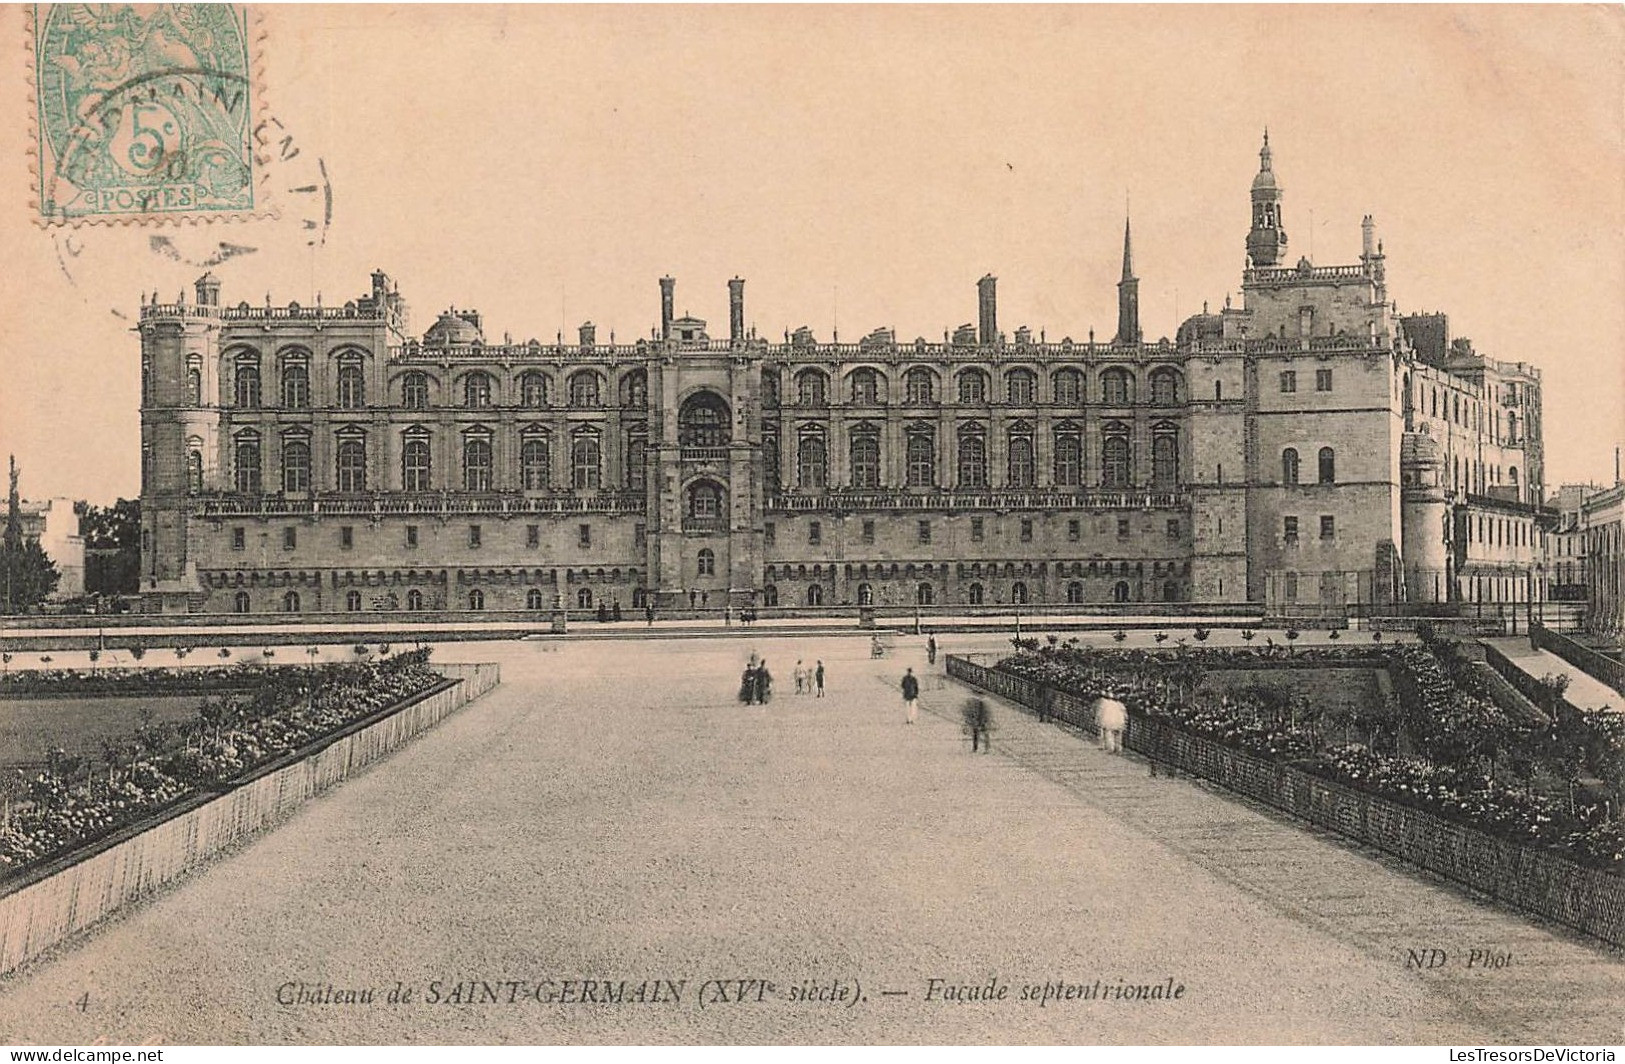 FRANCE - Château De Saint Germain (XVIè Siècle) - Façade Septentoriale - Animé - Carte Postale Ancienne - St. Germain En Laye (castle)